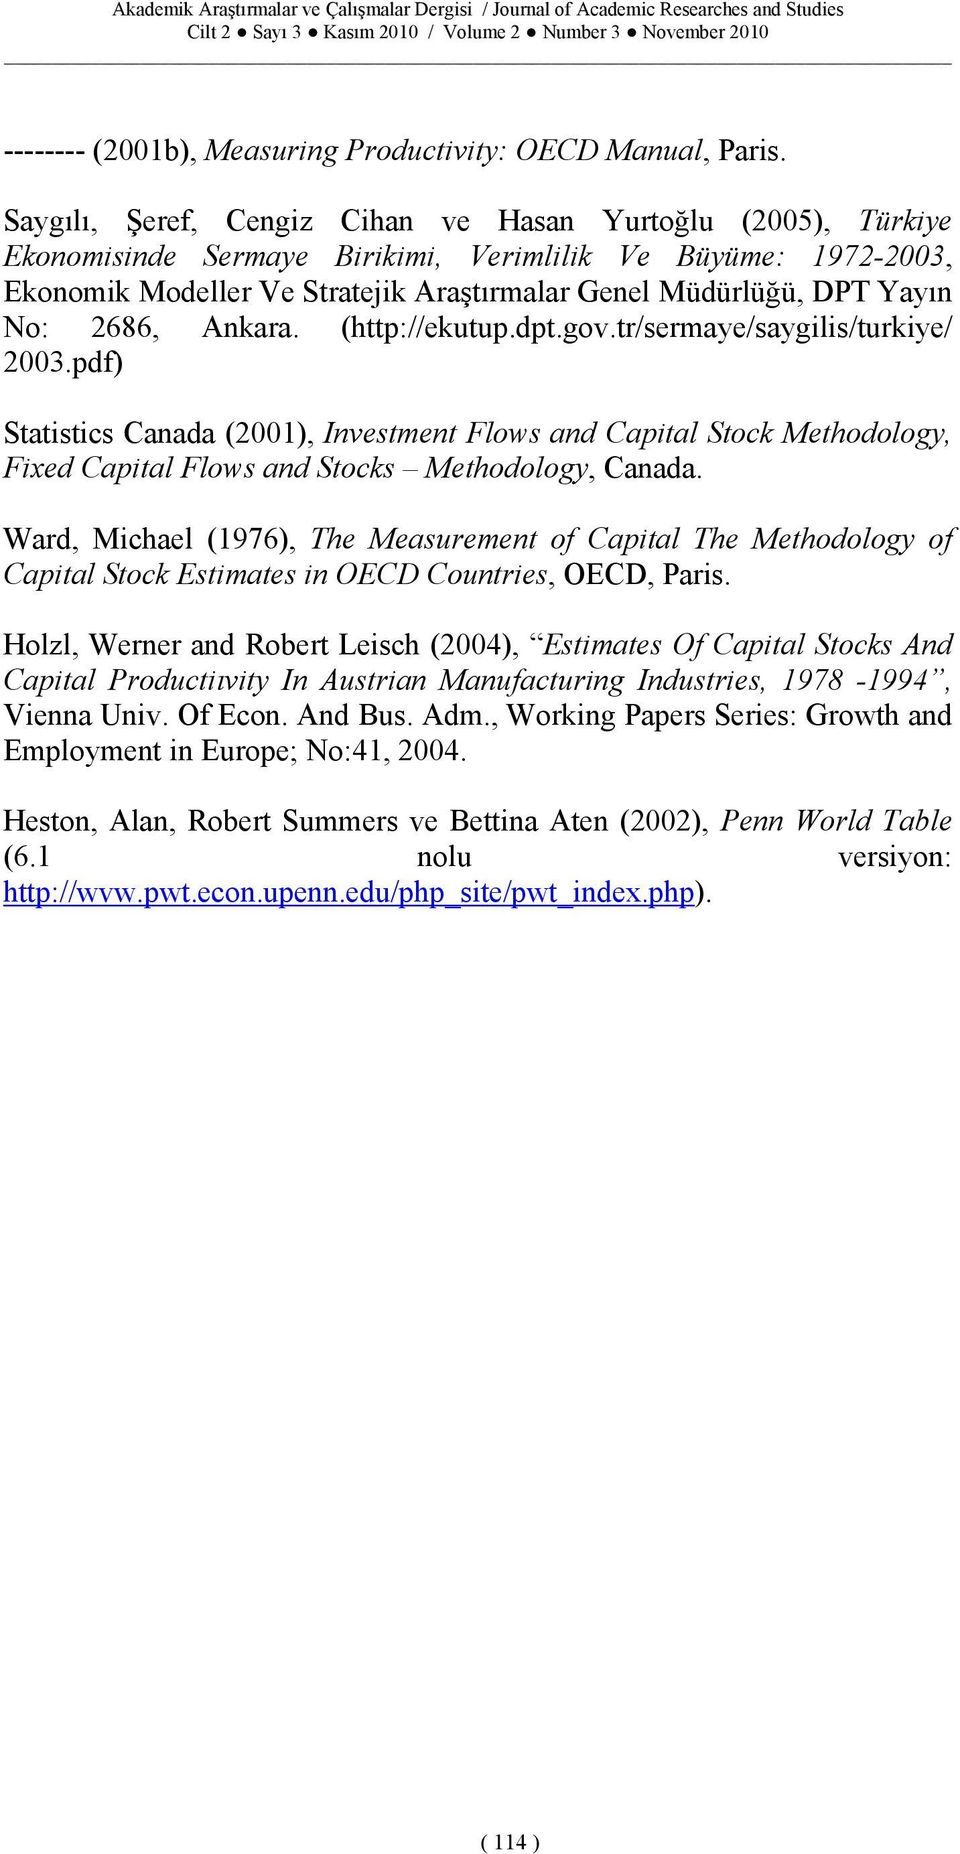 Akara. (http://ekutup.dpt.gov.tr/sermaye/saygilis/turkiye/ 2003.pdf) Statistics Caada (2001), Ivestmet Flows ad Capital Stock Methodology, Fixed Capital Flows ad Stocks Methodology, Caada.